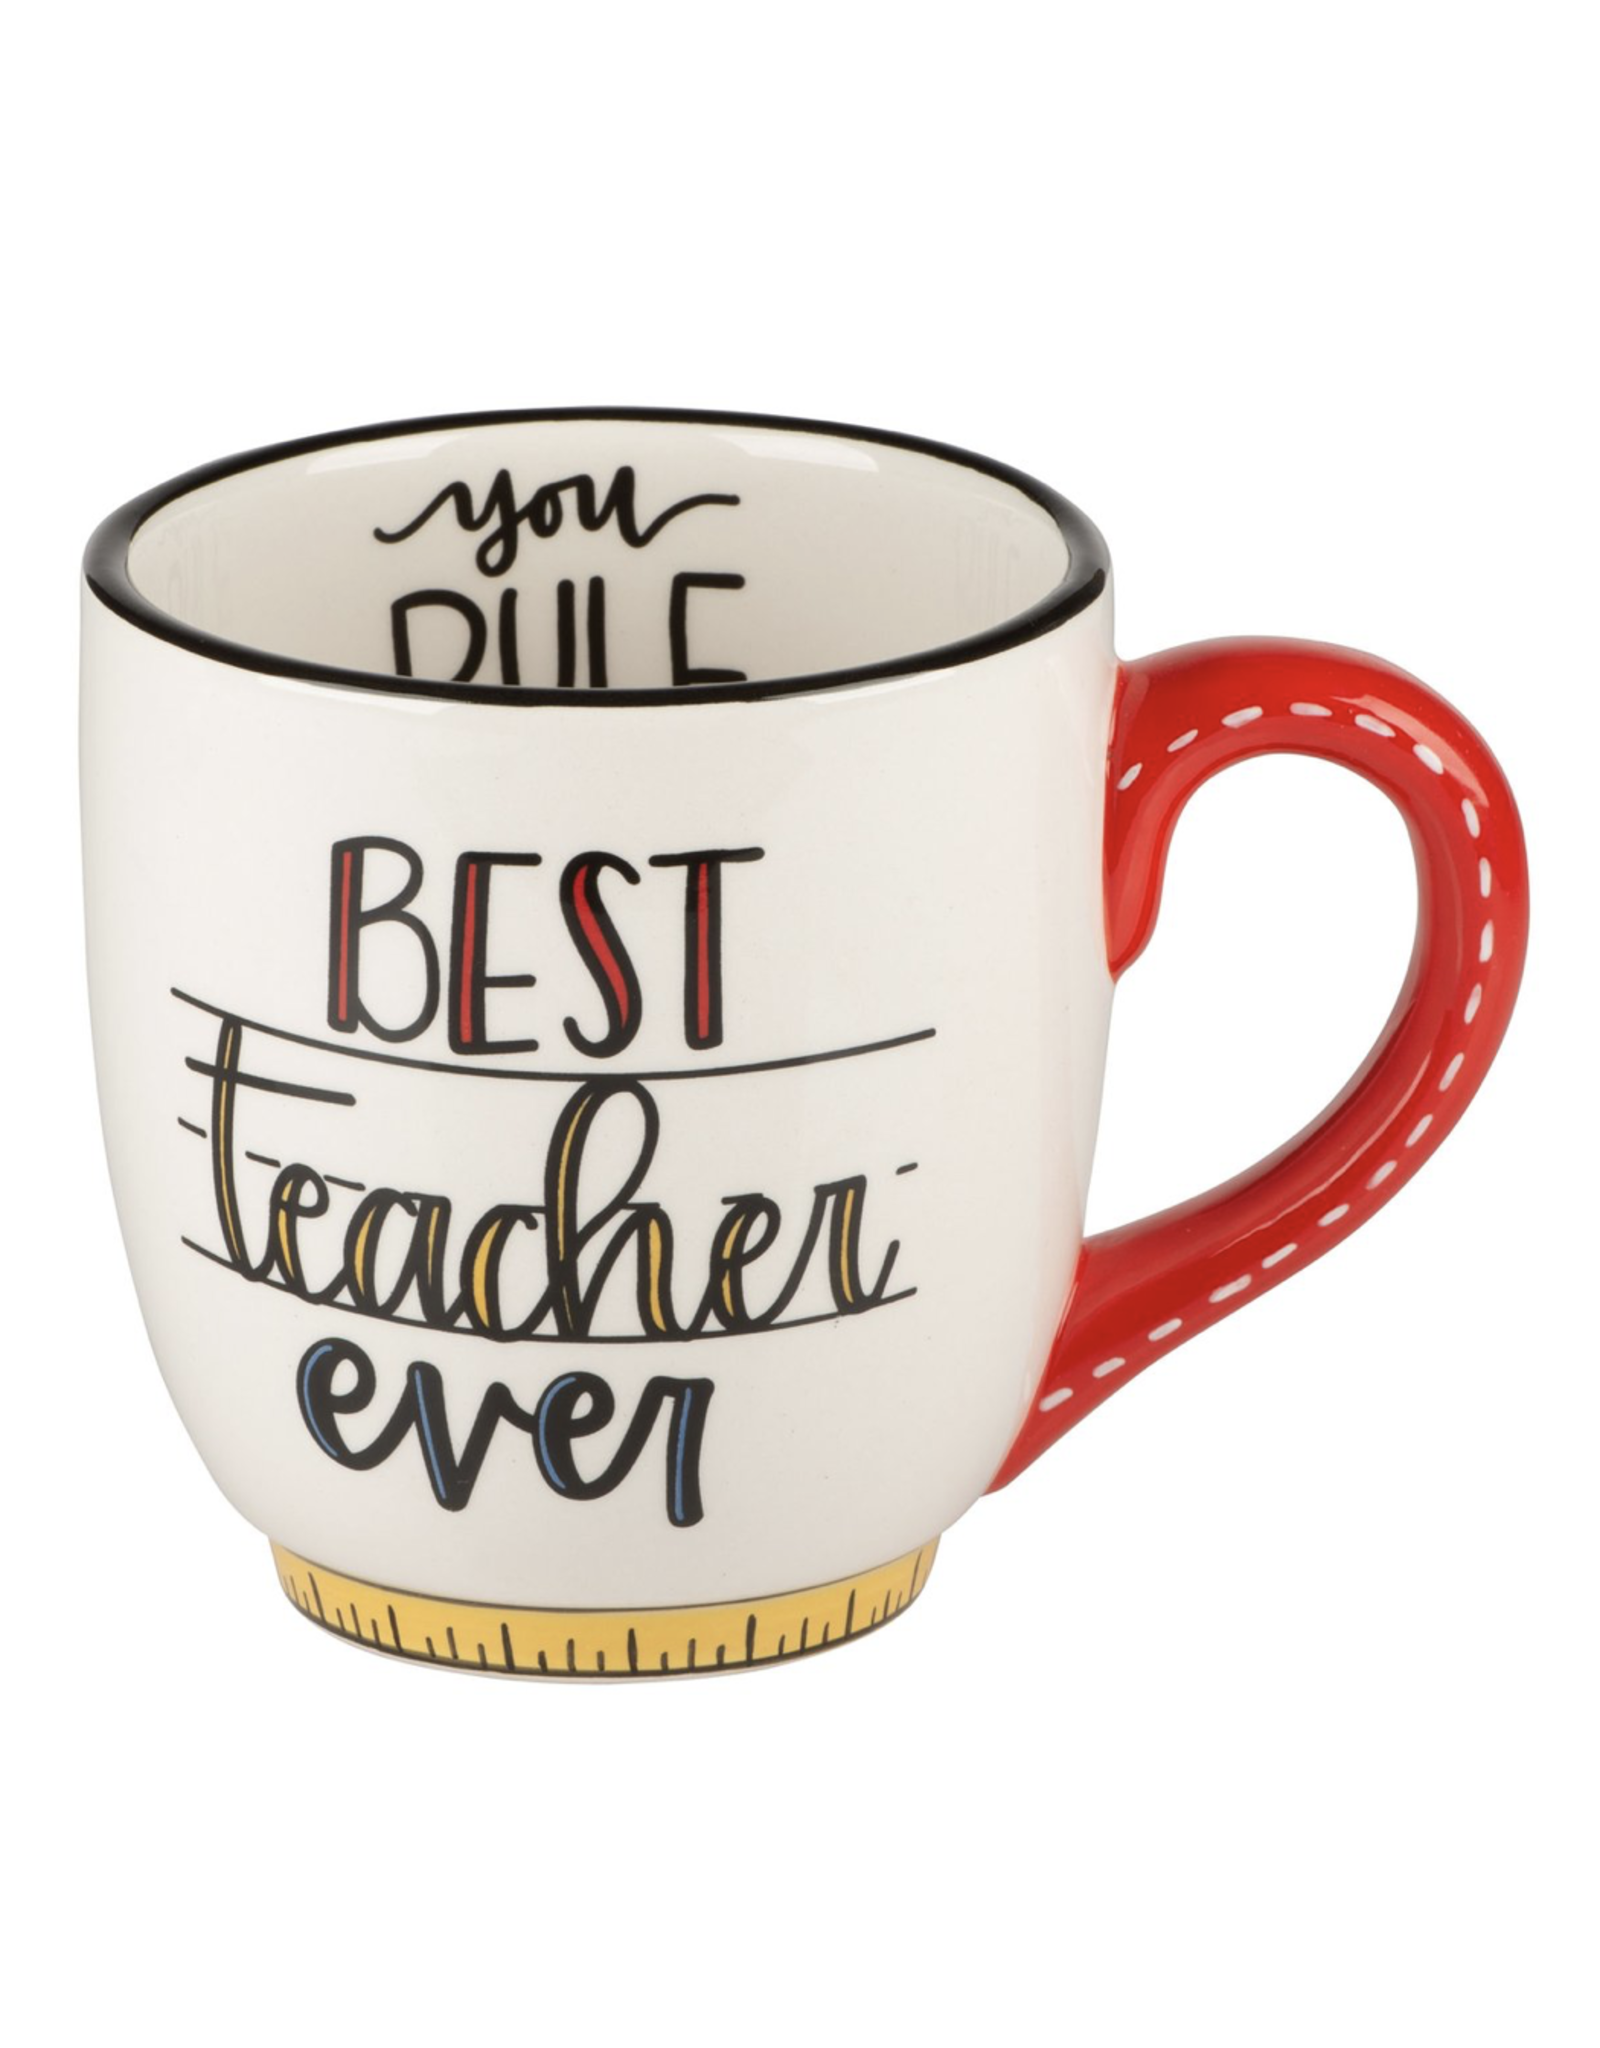 Mug Best Teacher Ever